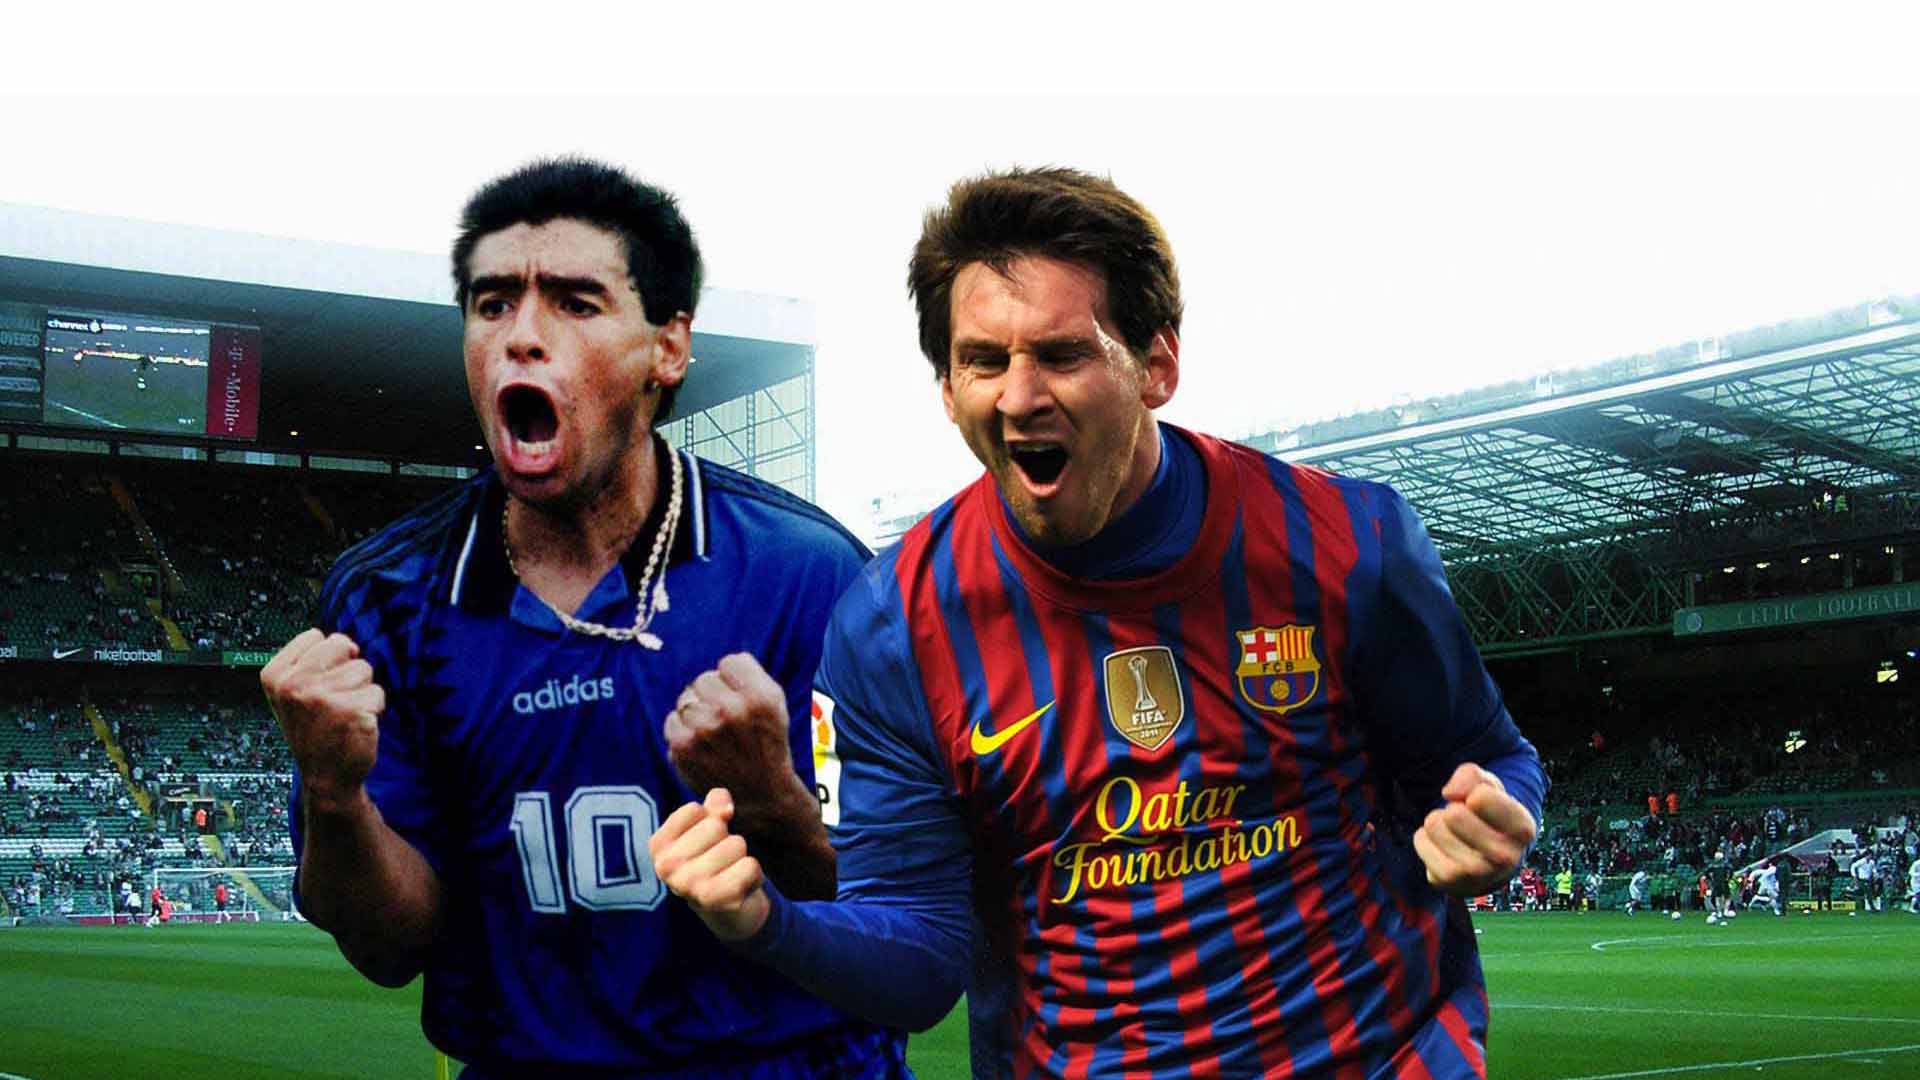 La estrella del Barcelona con 541 goles, cinco balones de oro, cuatro Champions, ocho ligas españolas, está muy por encima de Diego Maradona